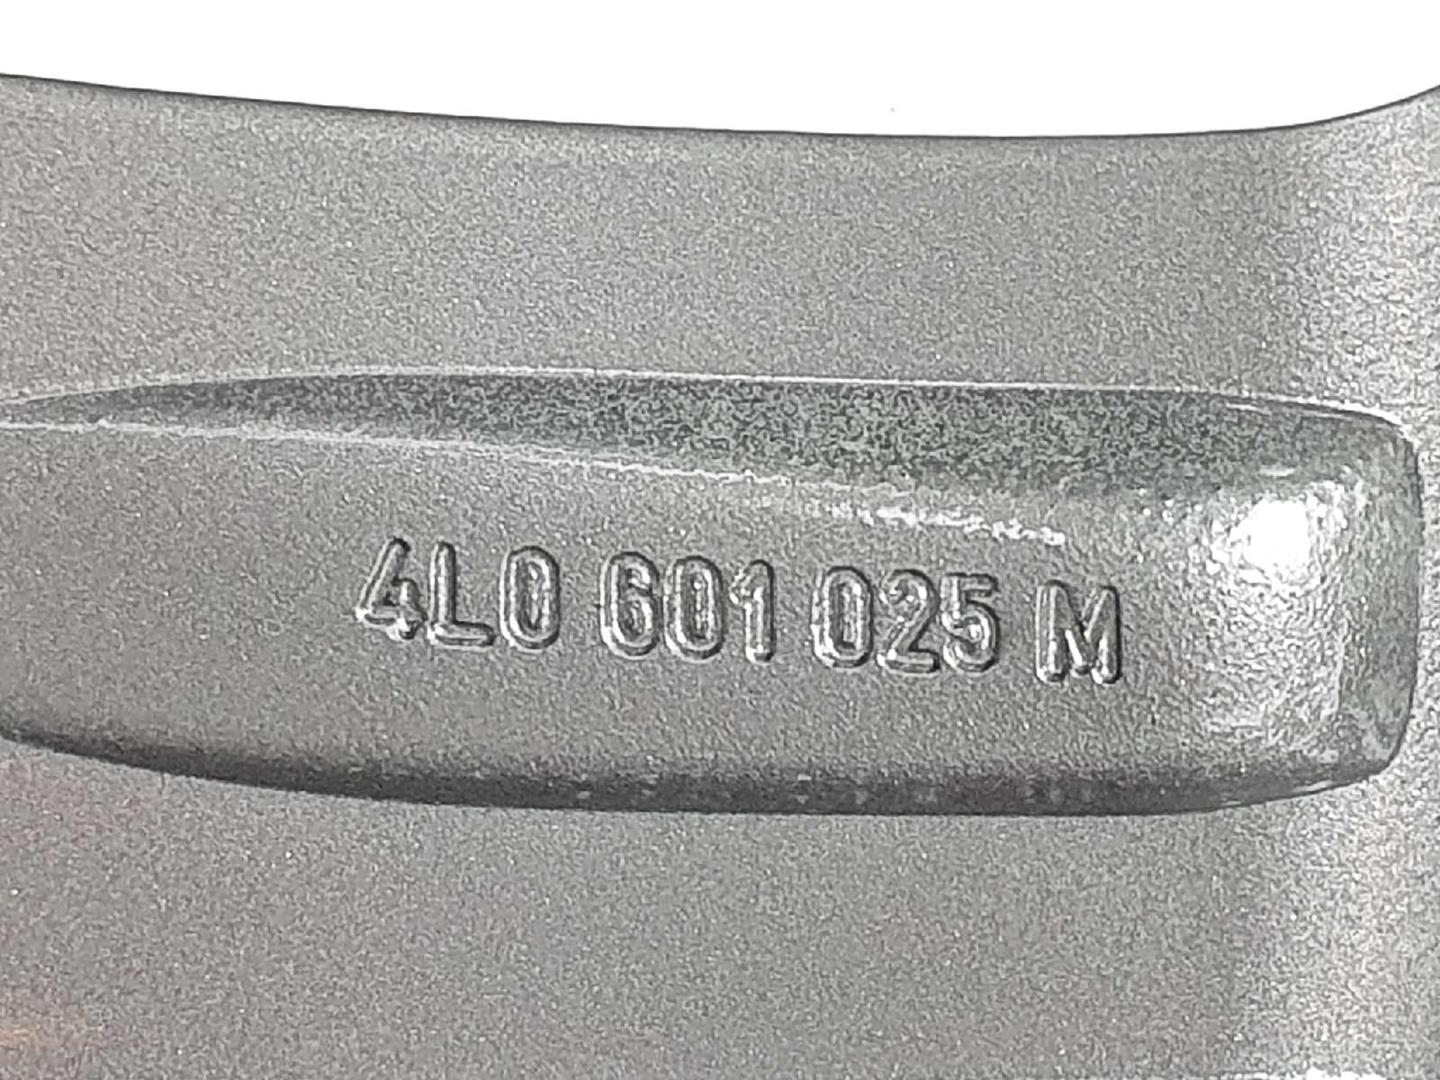 AUDI Q7 4L (2005-2015) Däck 4L0601025M, 4L0601025M, 20PULGADAS 19726270